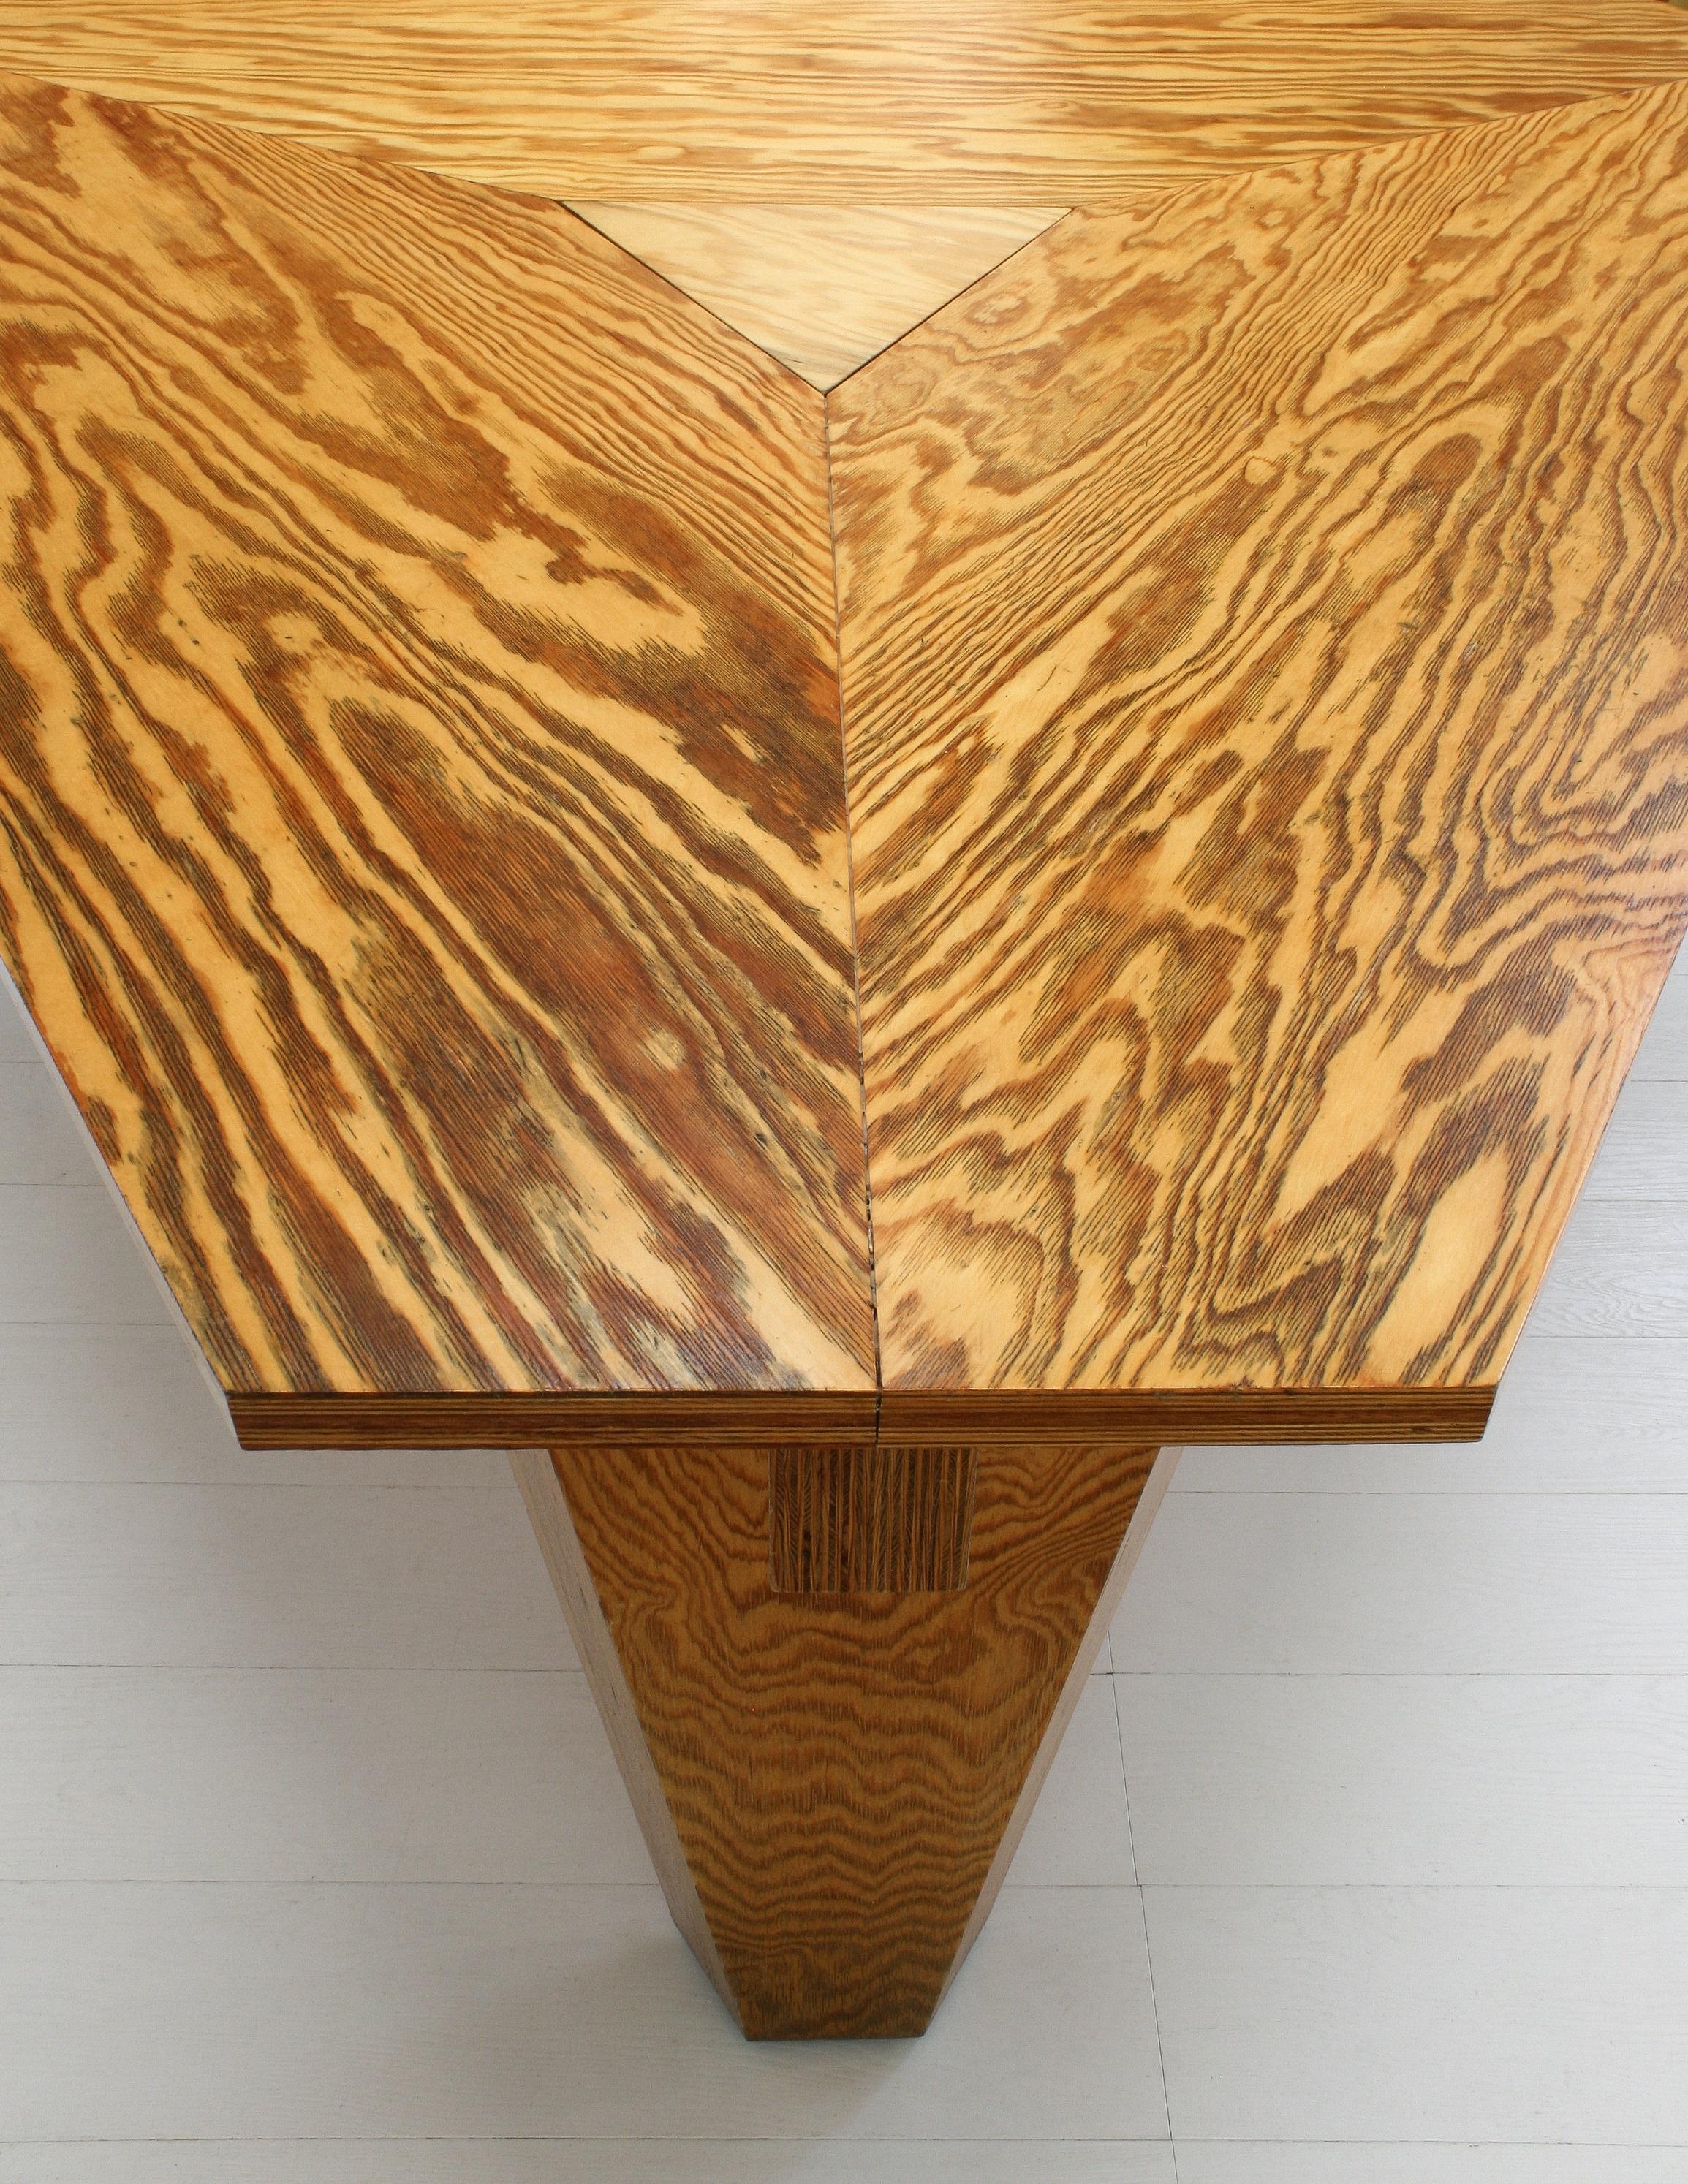 Exceptional Brutalist Oregon Pine Dining Room Set by Arch. Frank Verplanken 1991 For Sale 3